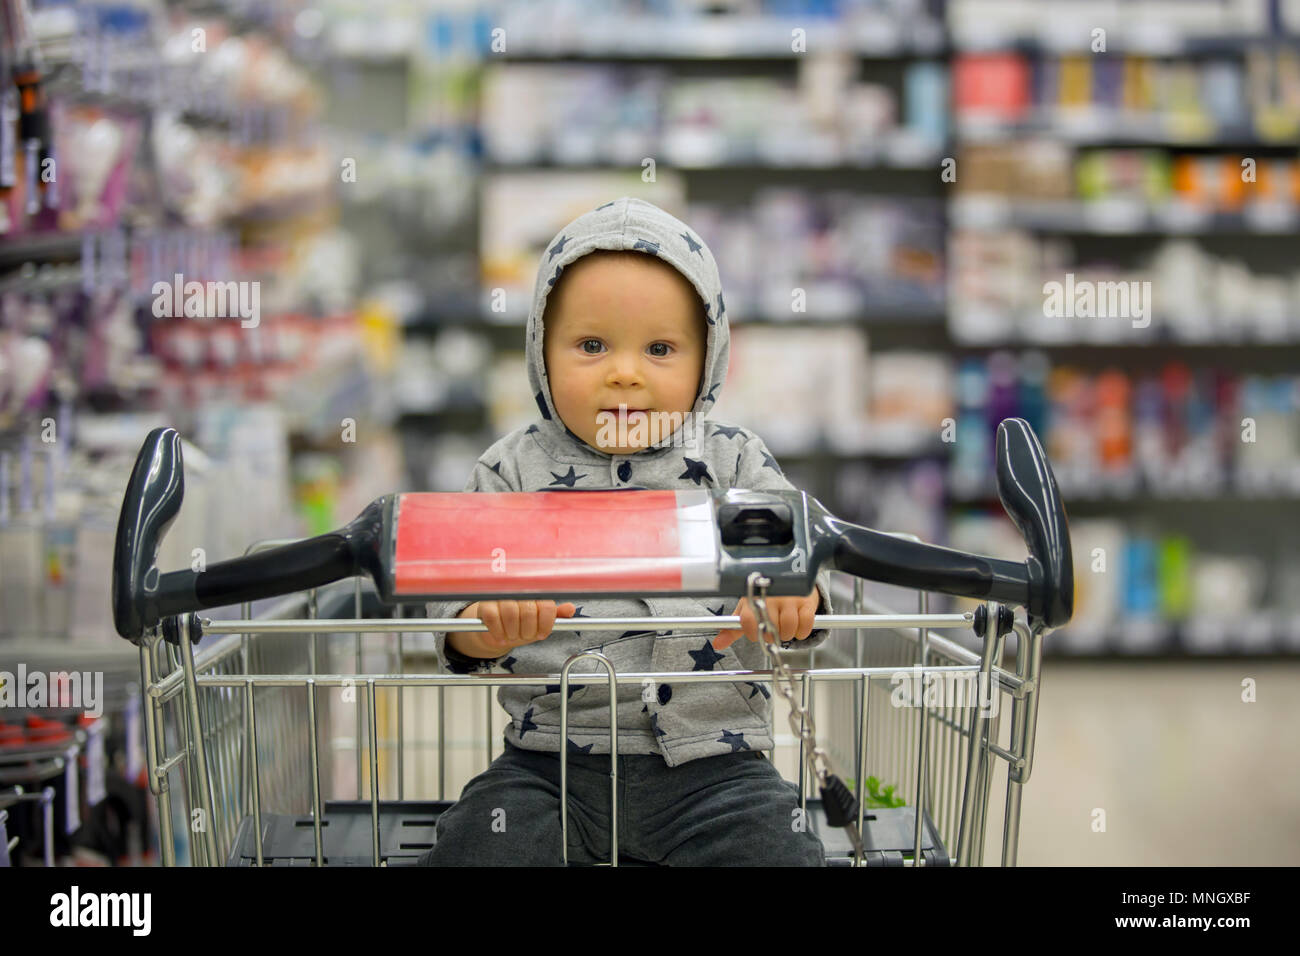 Kleinkind baby boy, sitzen in einem Einkaufswagen im Supermarkt, lächelnd  und Brot aß, während Mami einkaufen ist Stockfotografie - Alamy